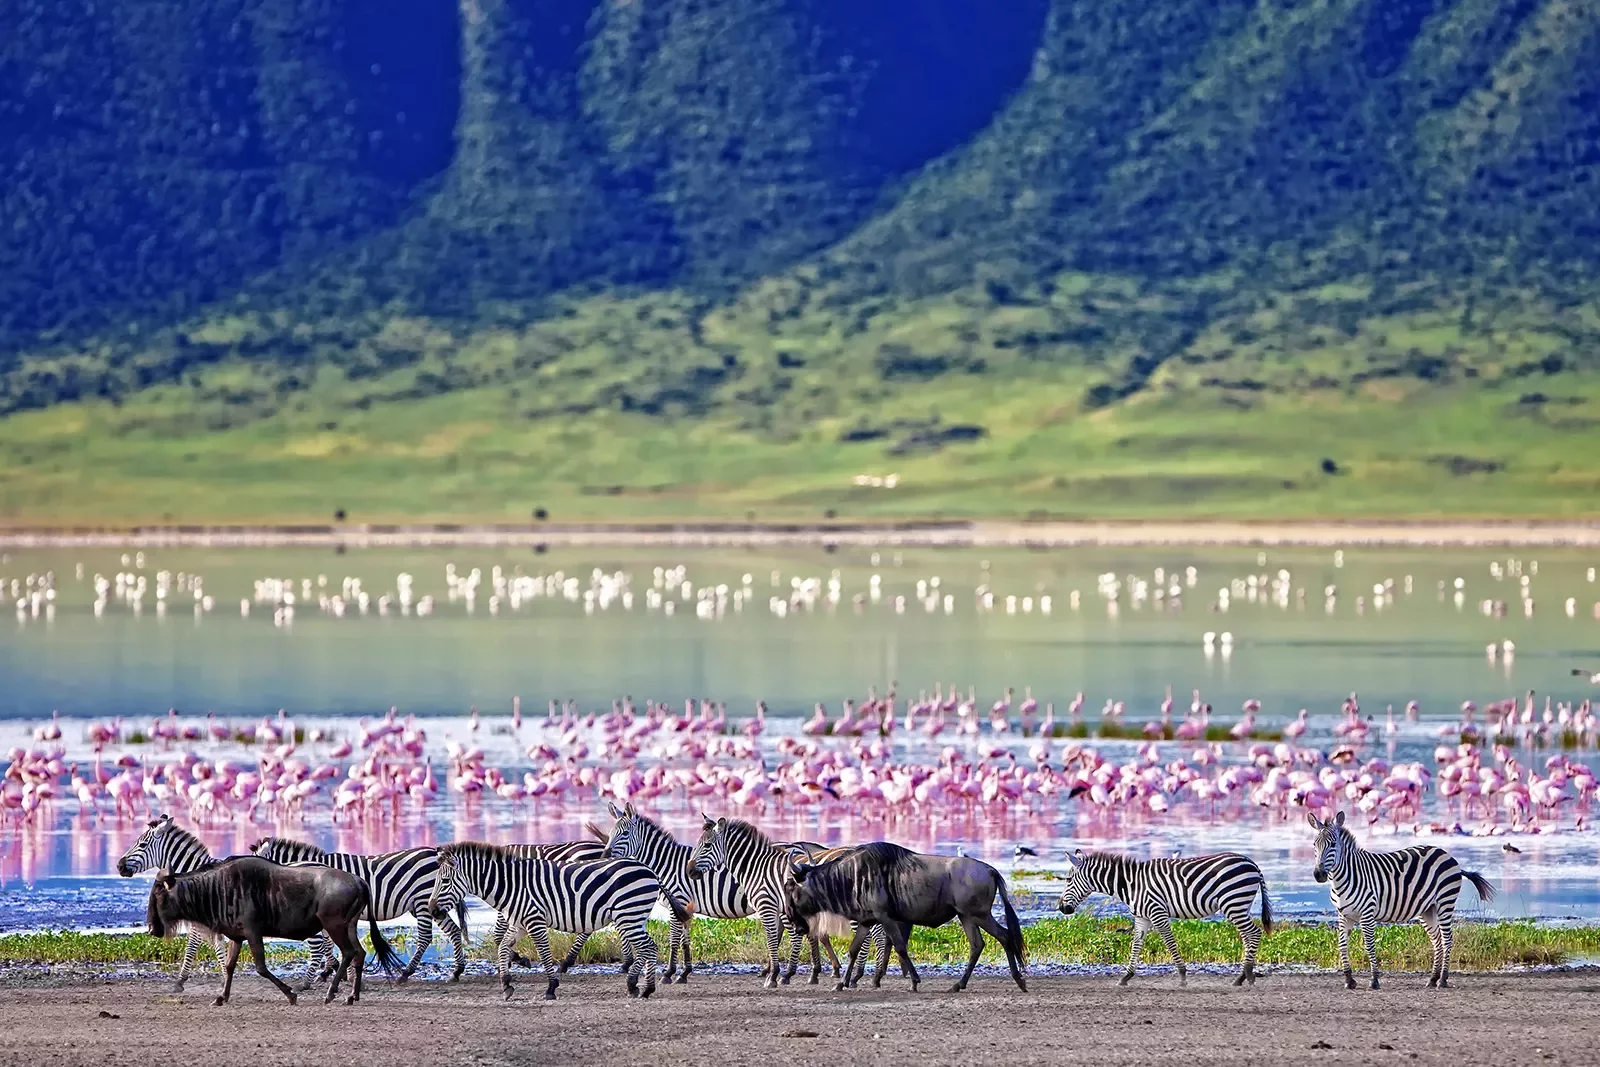 zebras walk by a lake where flamingos bathe